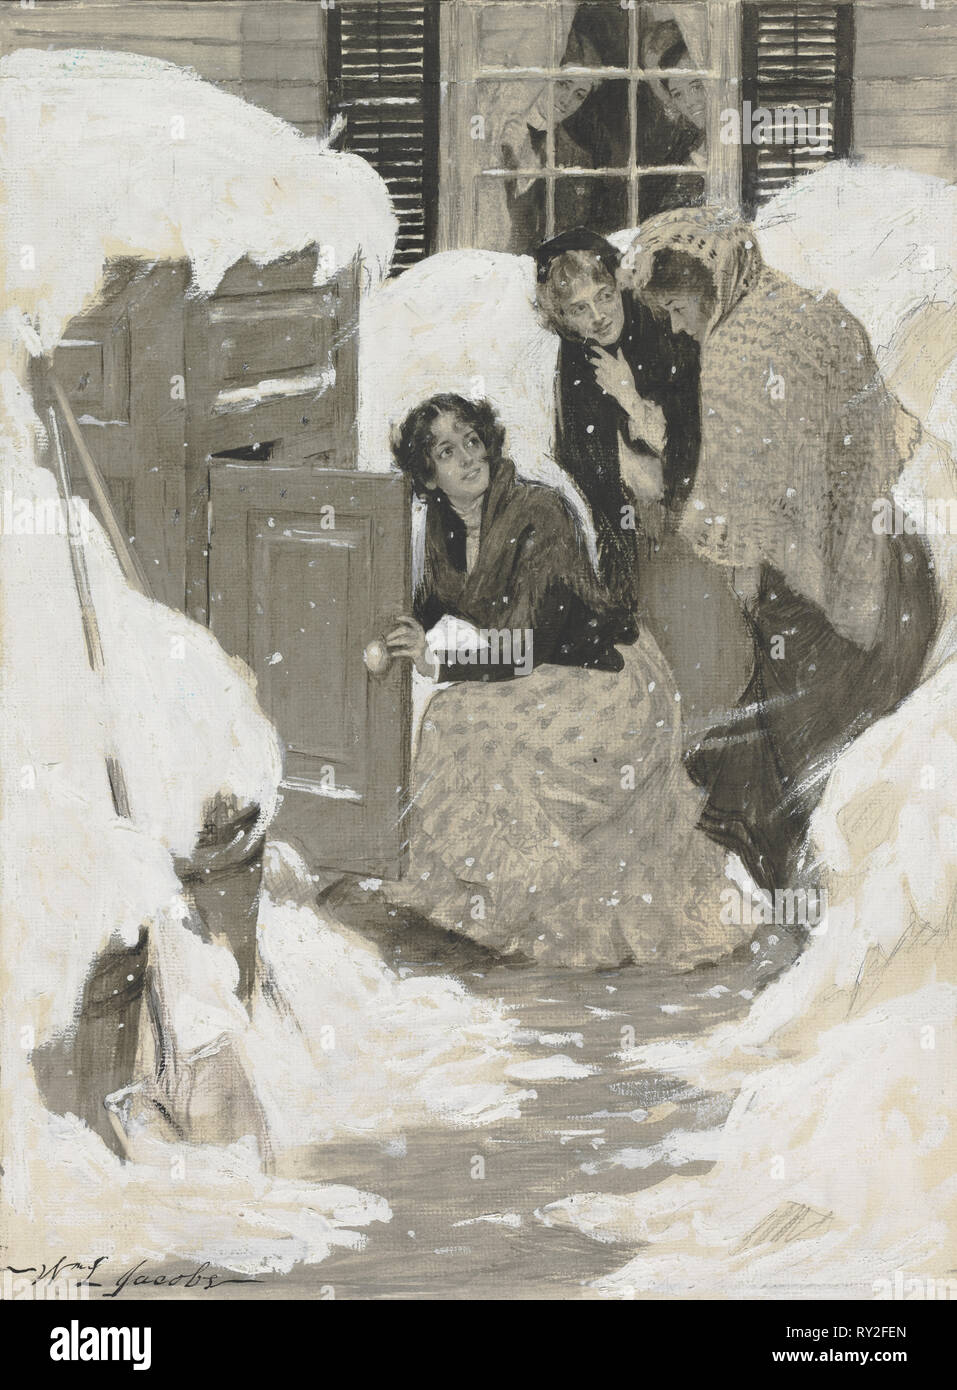 Schizzo per una illustrazione per un libro. William Leroy Jacobs (American, 1869-1917). Acquerello Foto Stock